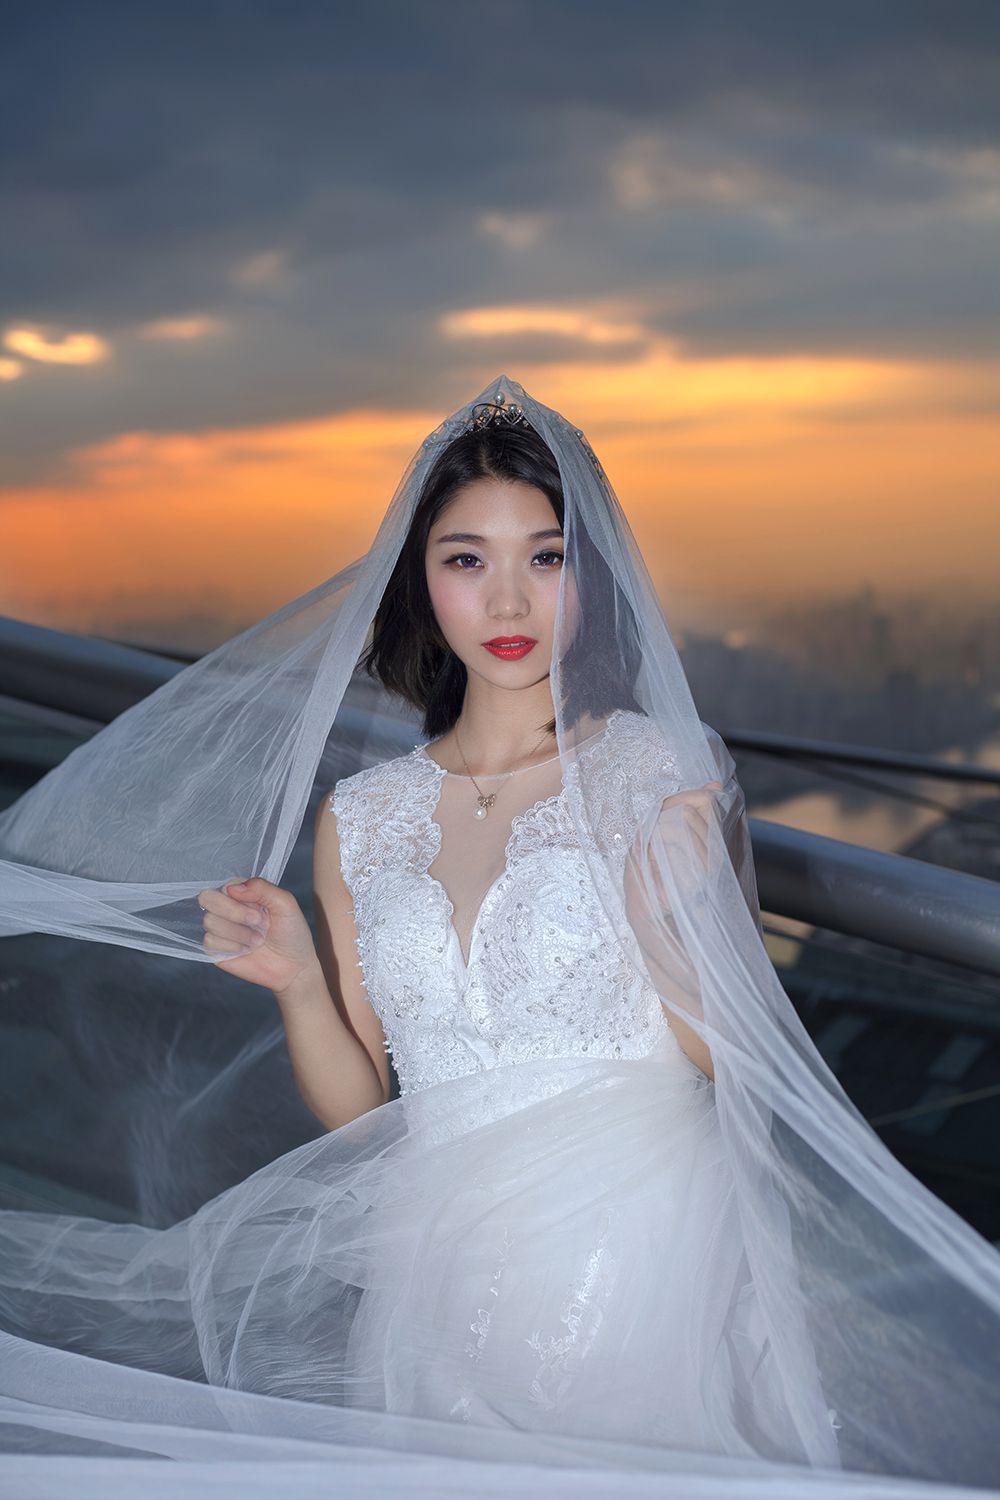 2017年8月广州婚纱照图片,云浮婚纱照,婚纱照图片